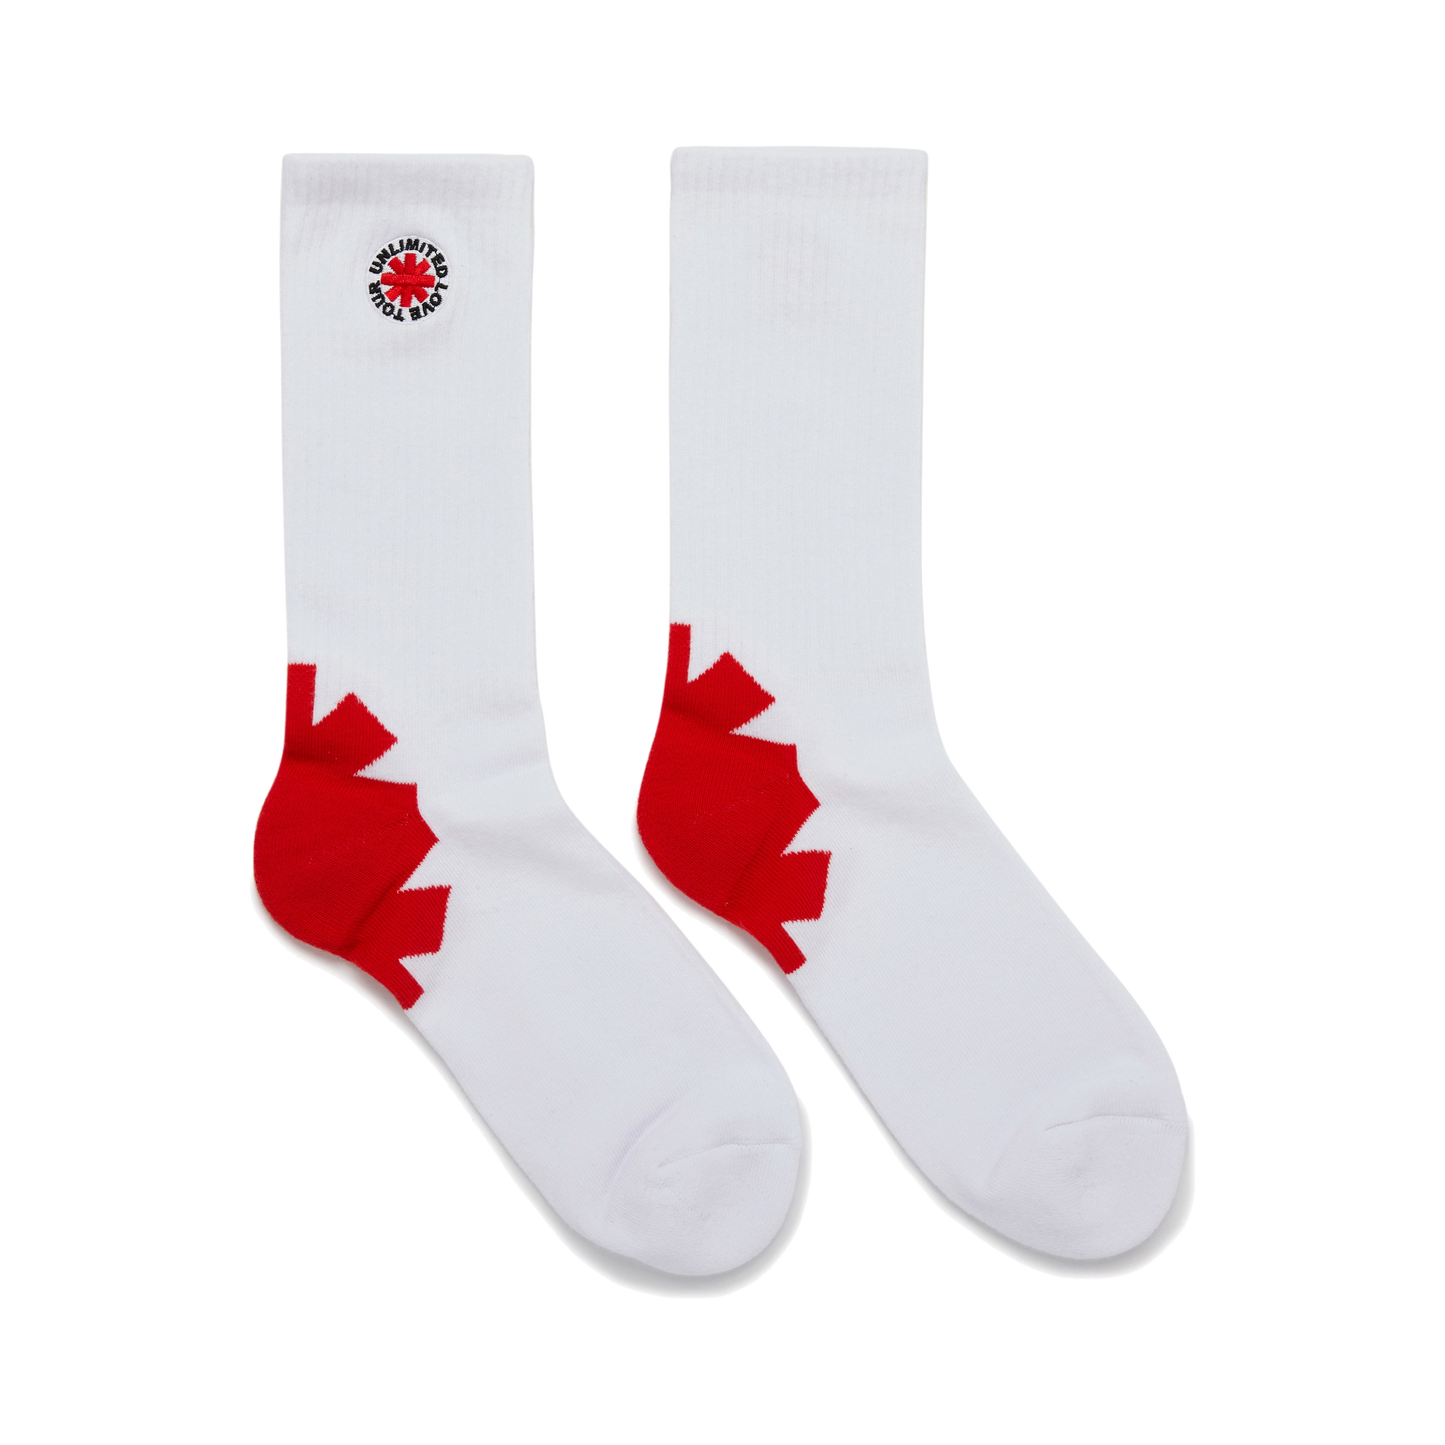 Asterisk Socks White